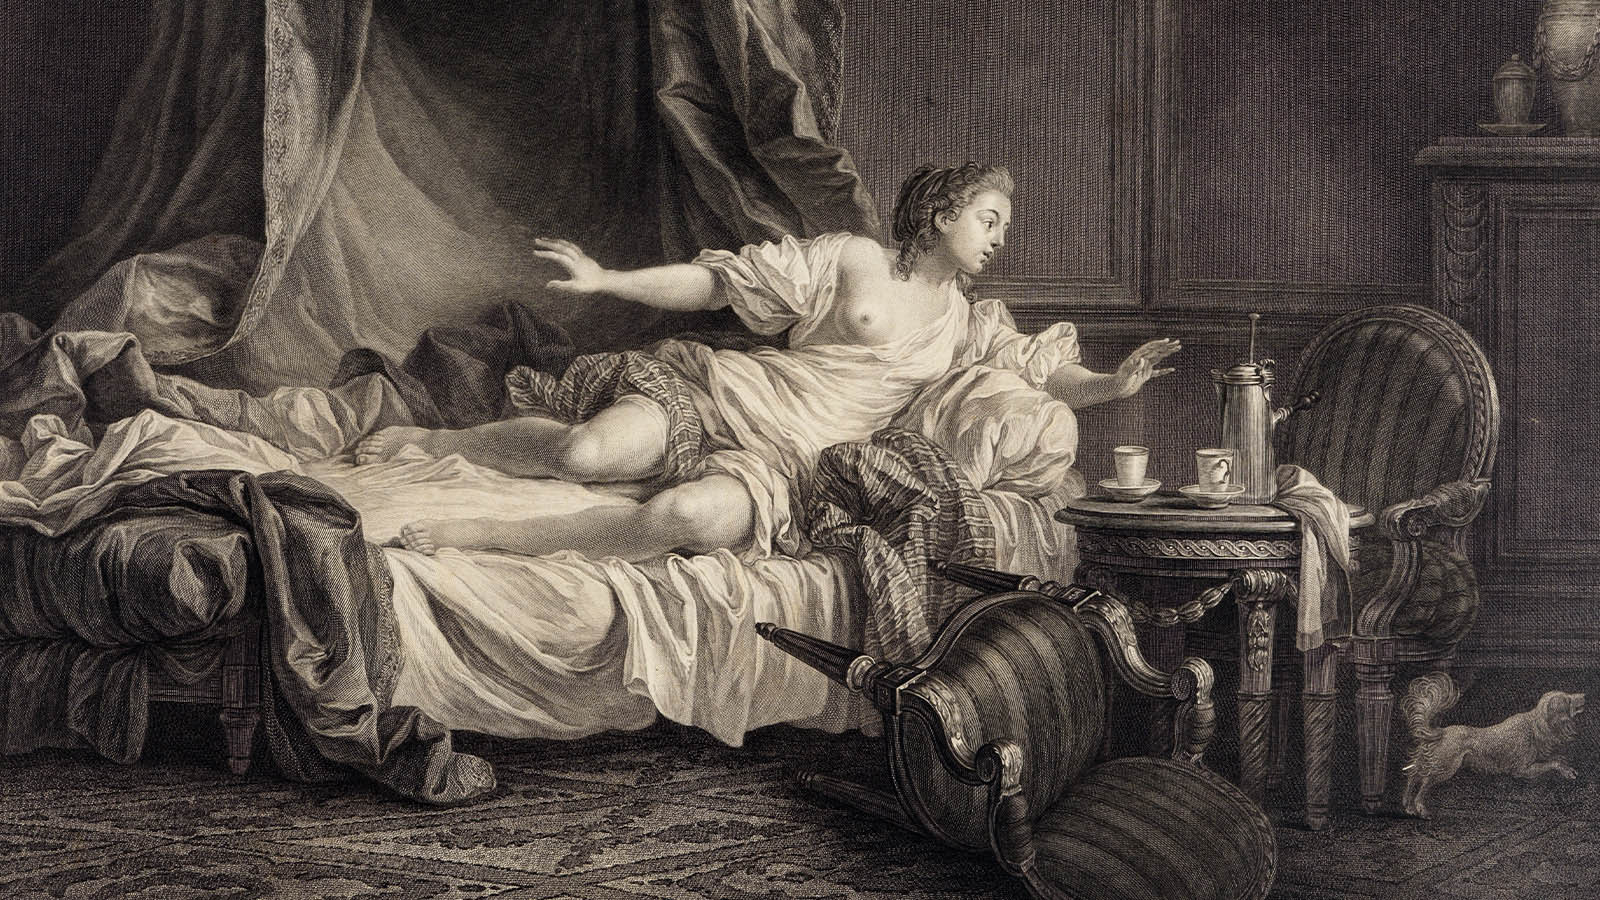 - Nöel Le Mire, after Jean-Baptiste Le Prince, ‘La Crainte’ (Fear). France, 1783. Etching on paper. Calouste Gulbenkian Museum.